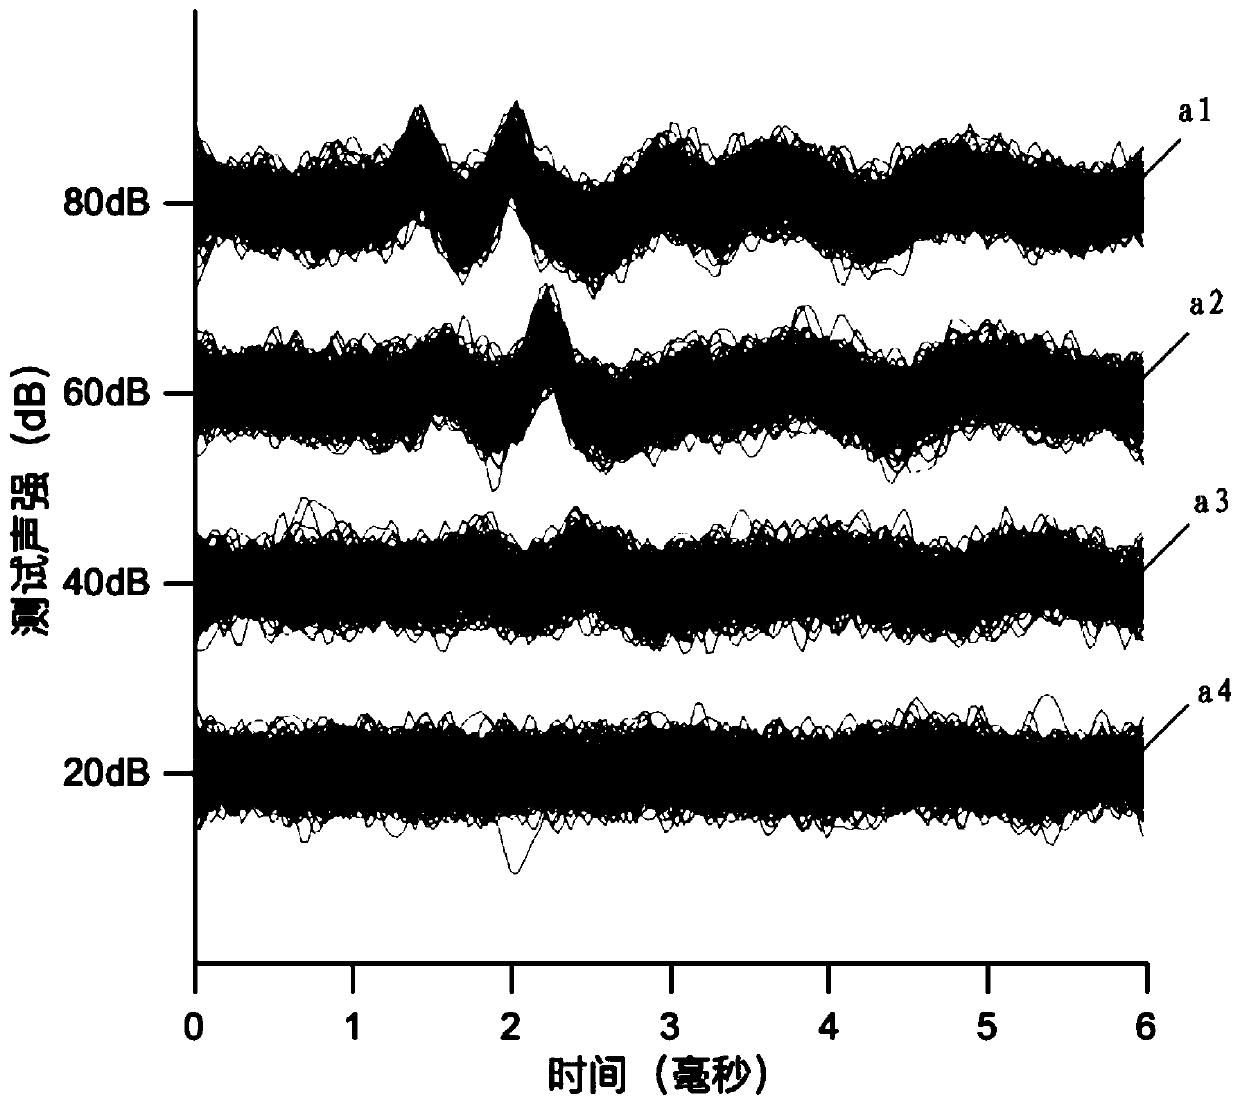 ABR (auditory brainstem response) automatic test method based on self-adaptive average method